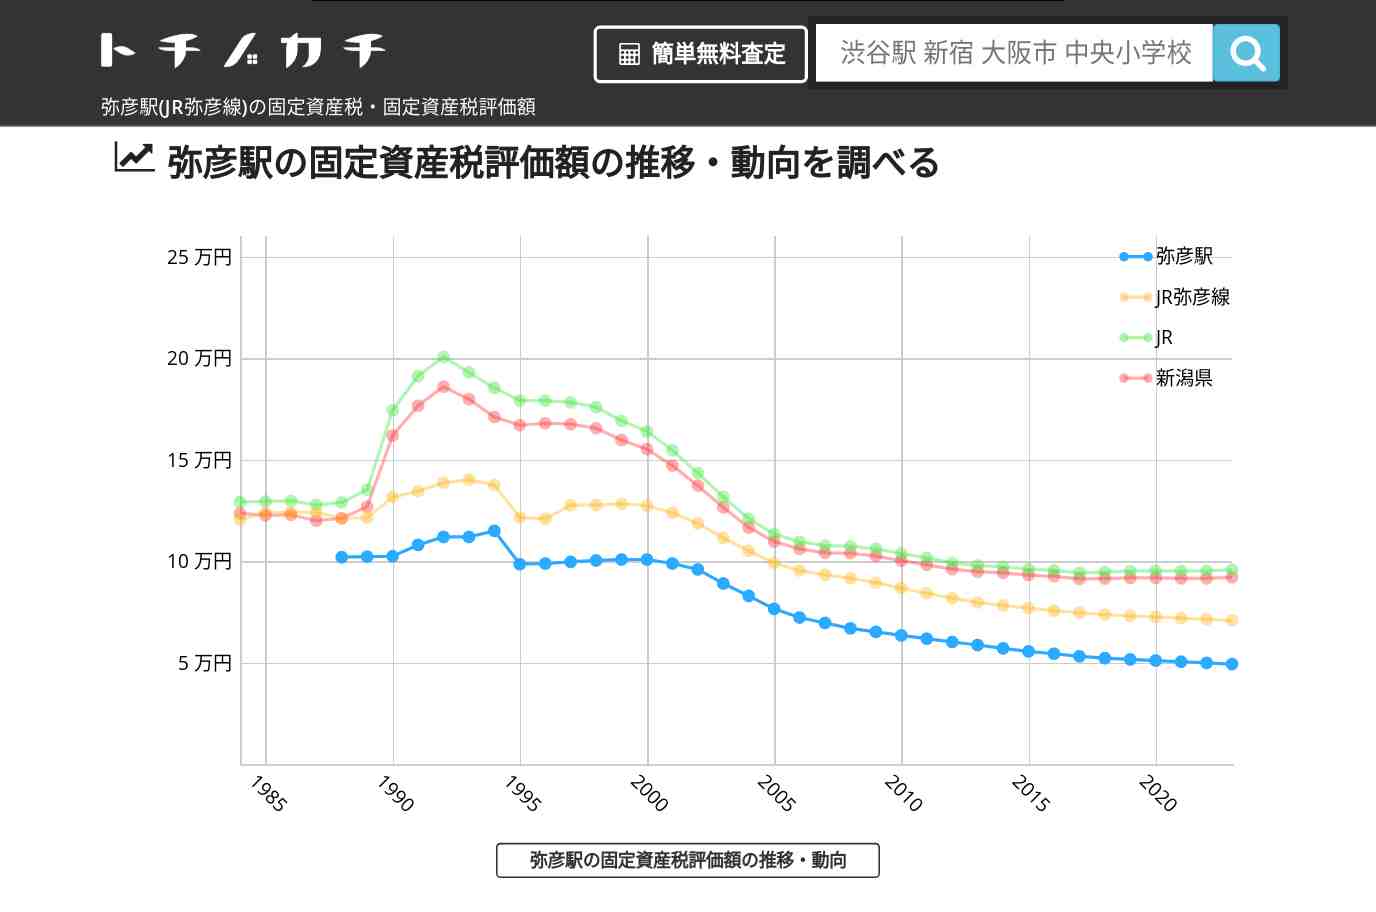 弥彦駅(JR弥彦線)の固定資産税・固定資産税評価額 | トチノカチ